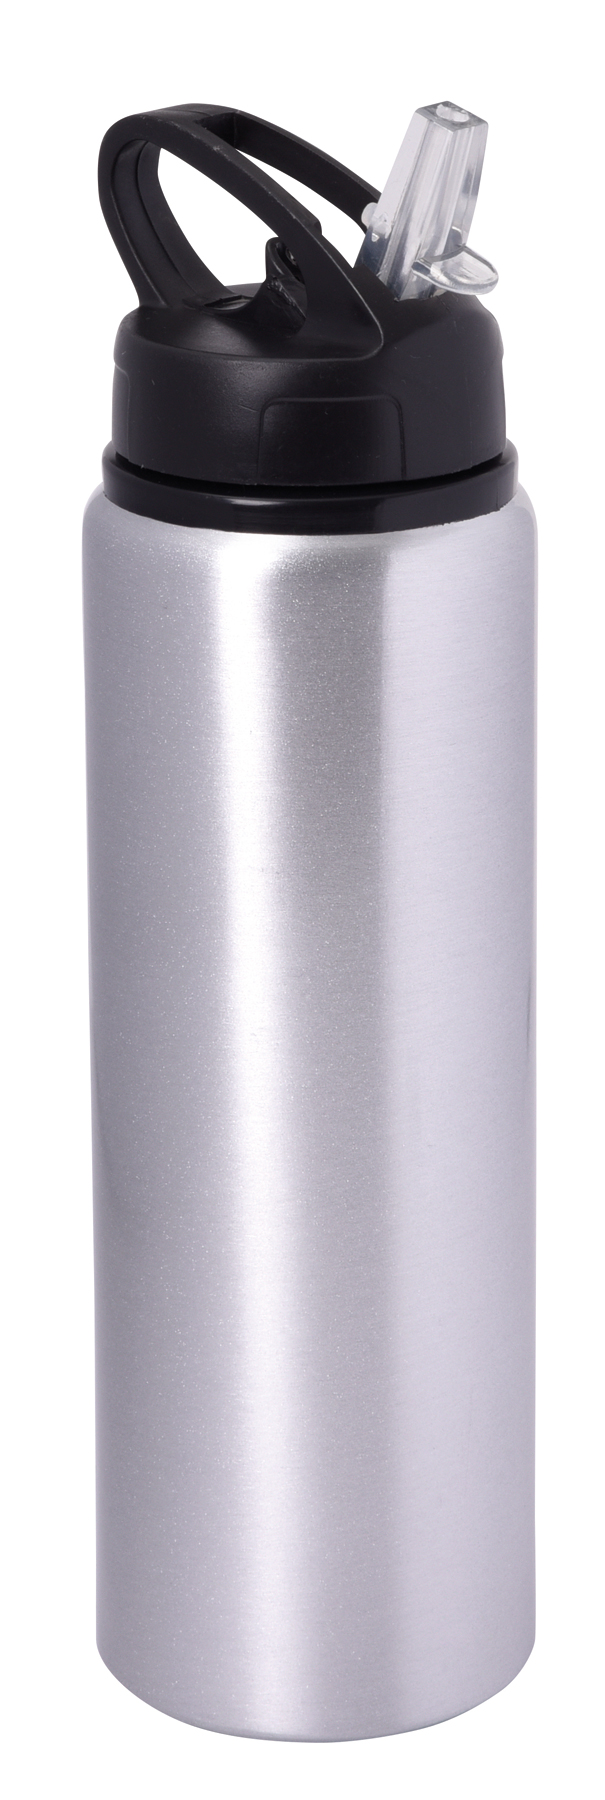 Aluminiowa butelka do picia SPORTY TRANSIT, srebrny